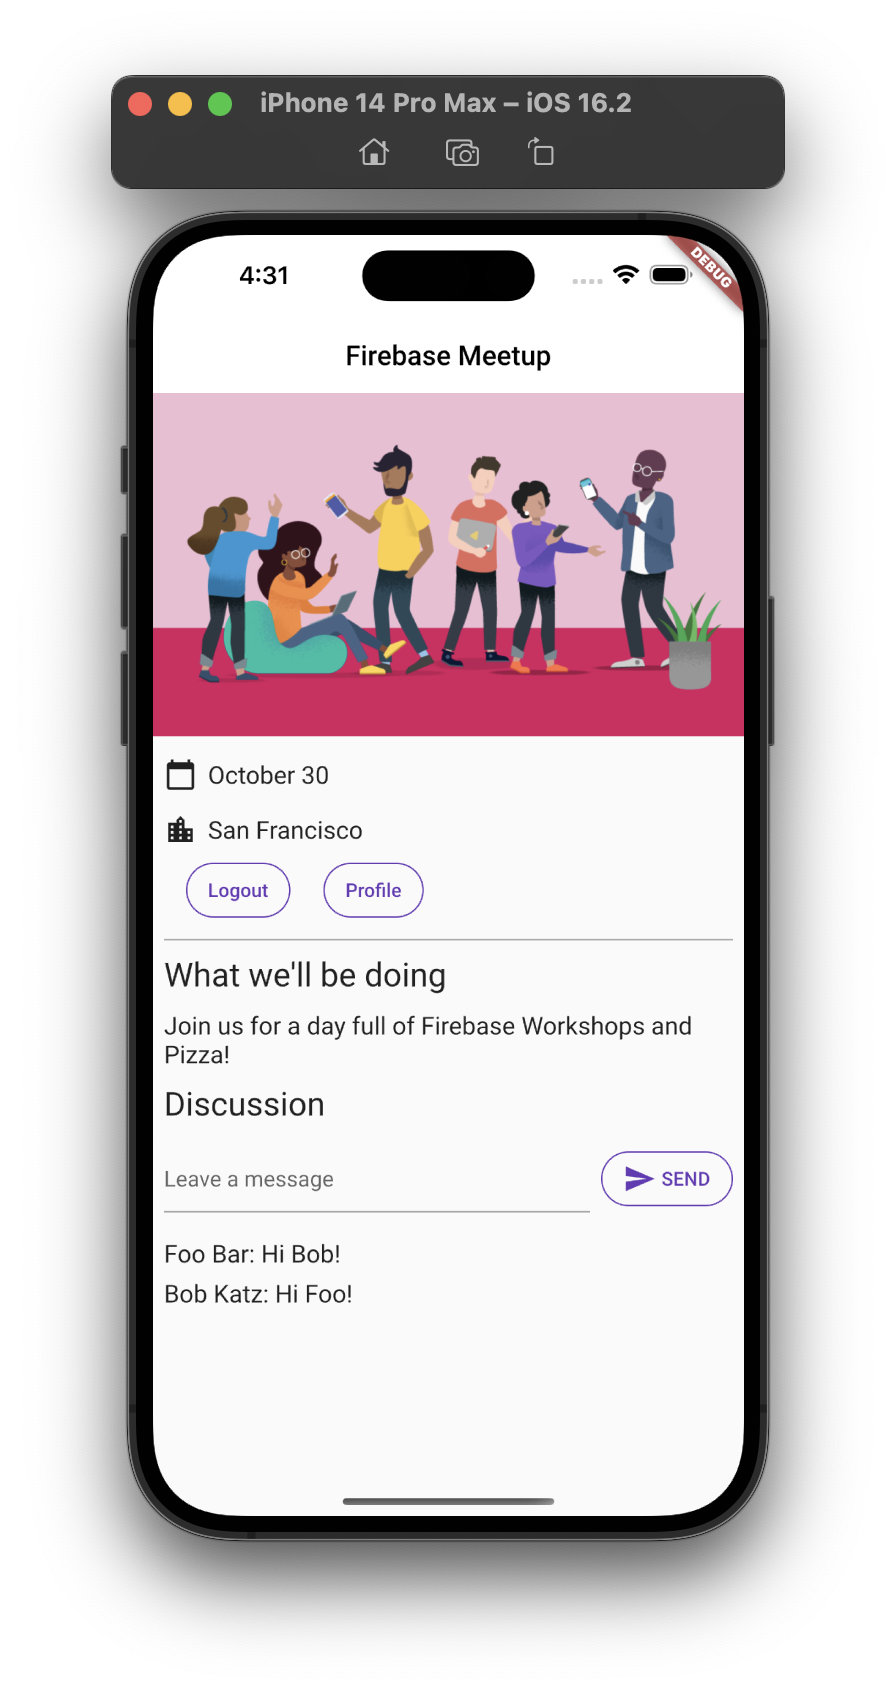 La schermata iniziale dell'app su iOS con integrazione della chat